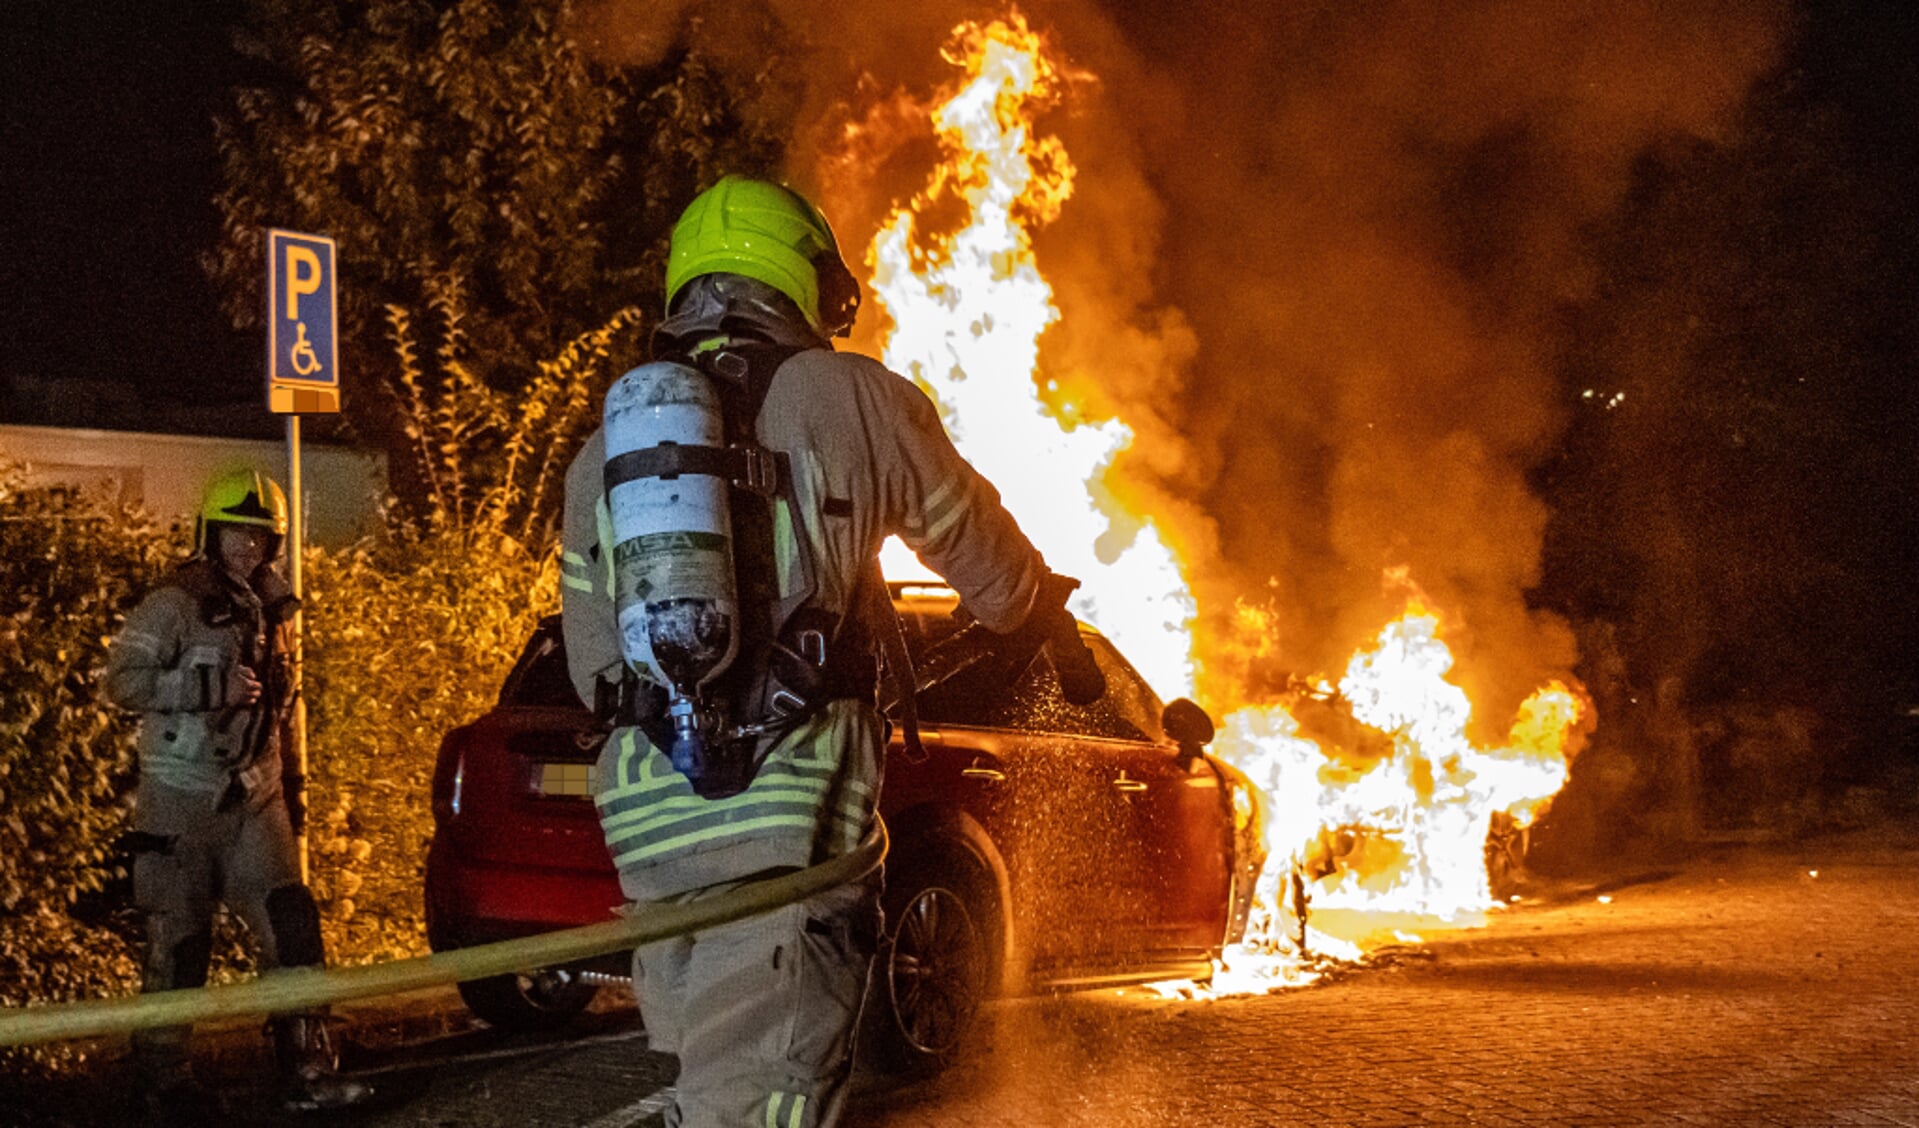 Voertuig volledig verwoest door brand op het Barbierpad in Schiedam